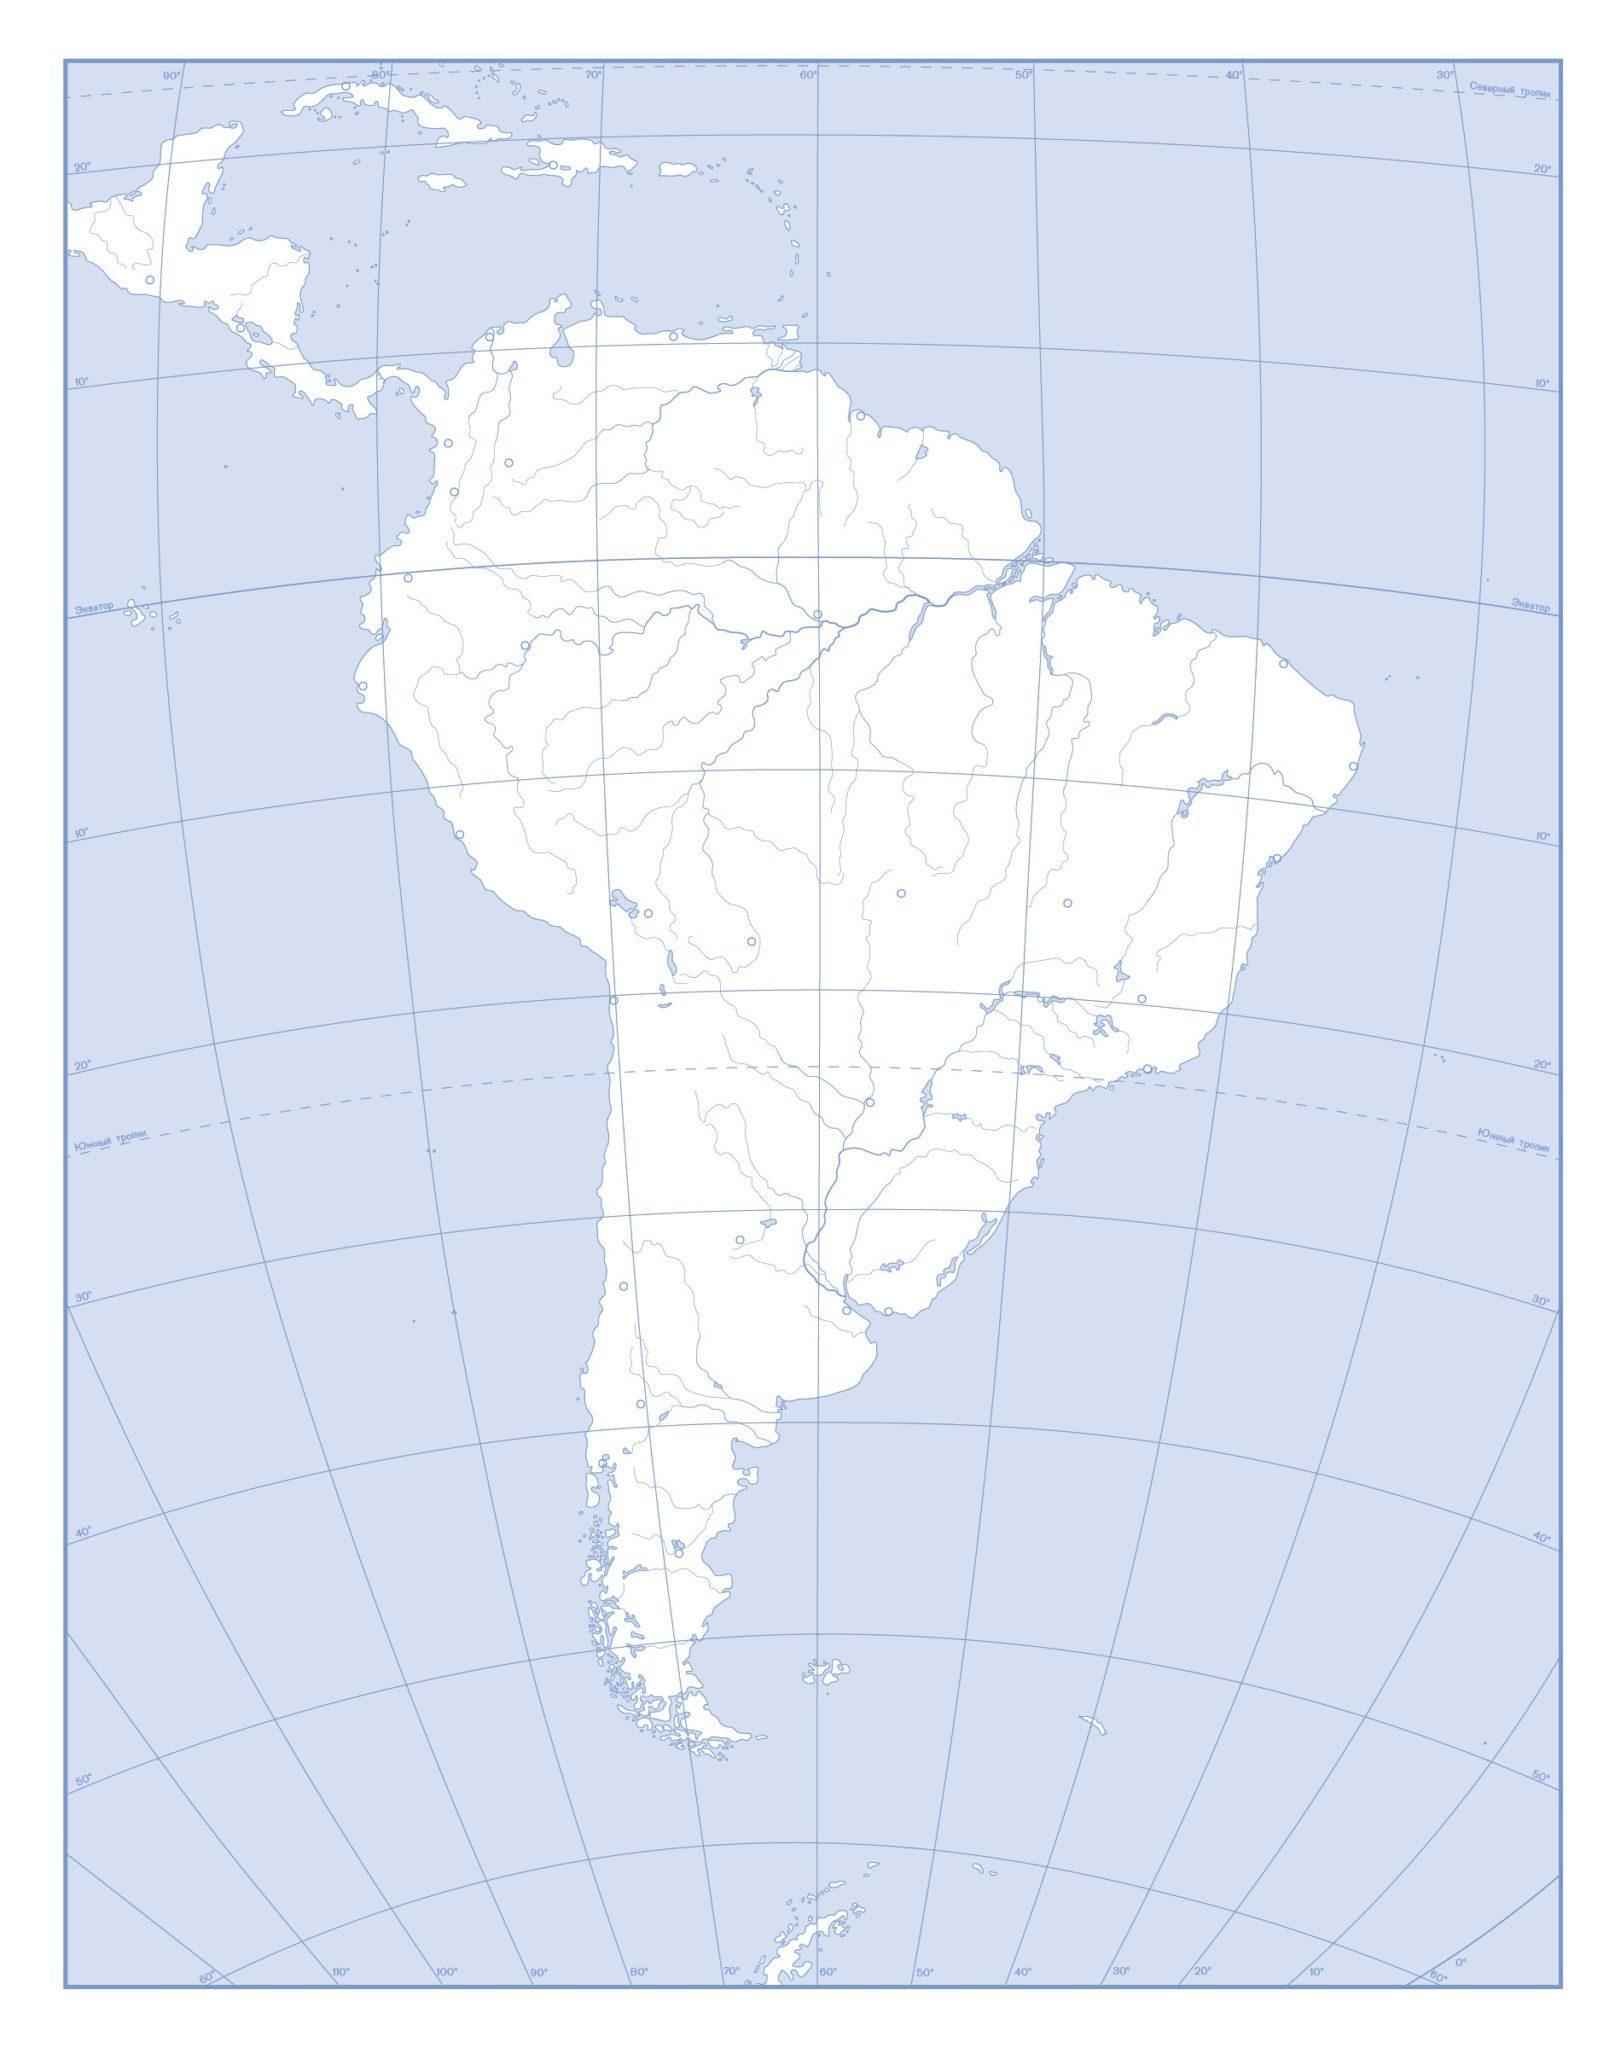 Контурная карта Южной Америки. Пустая карта Южной Америки. Политическая карта Южной Америки контурная карта. Физическая карта Южной Америки контурная карта. Подпишите на контурной карте южной америки названия